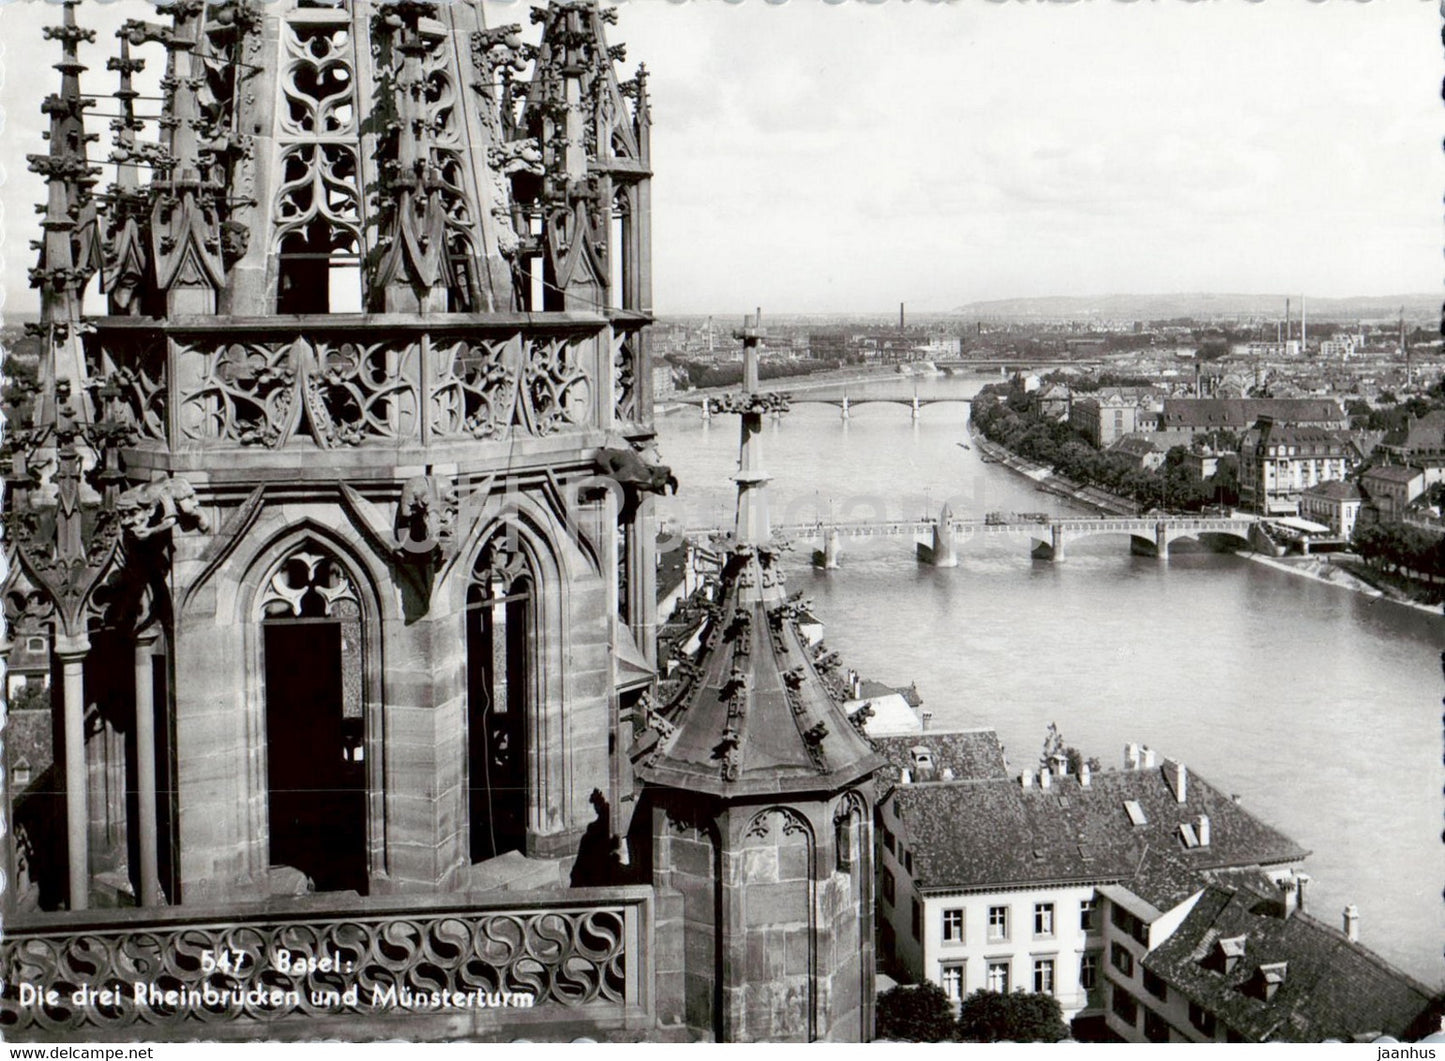 Basel - Die drei Rheinbrucken und Munsterturm - cathedral - 547 - old postcard - 1943 - Switzerland - used - JH Postcards